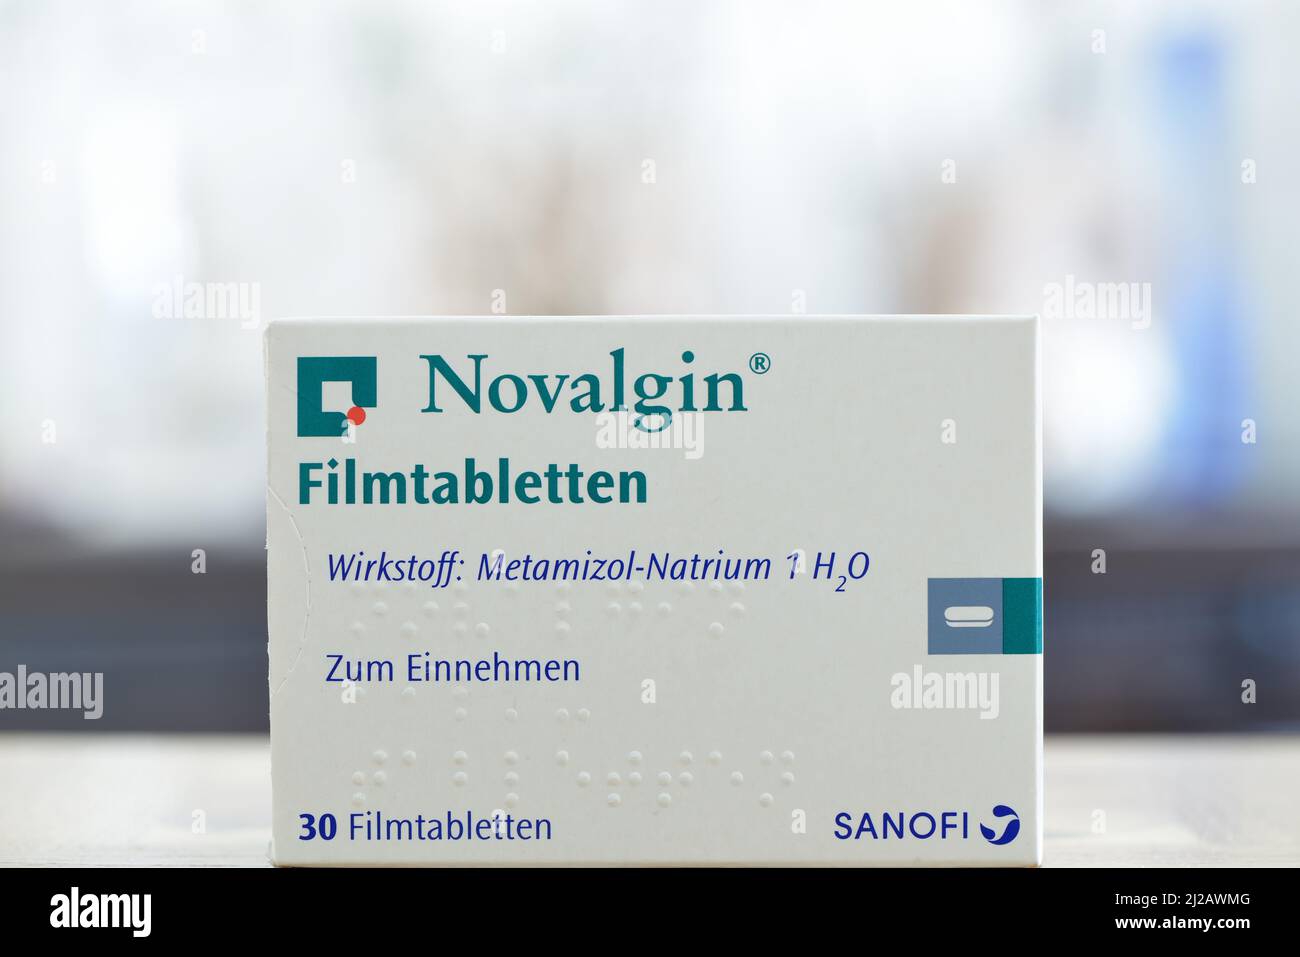 Filmtabletten novalgin -Fotos und -Bildmaterial in hoher Auflösung – Alamy